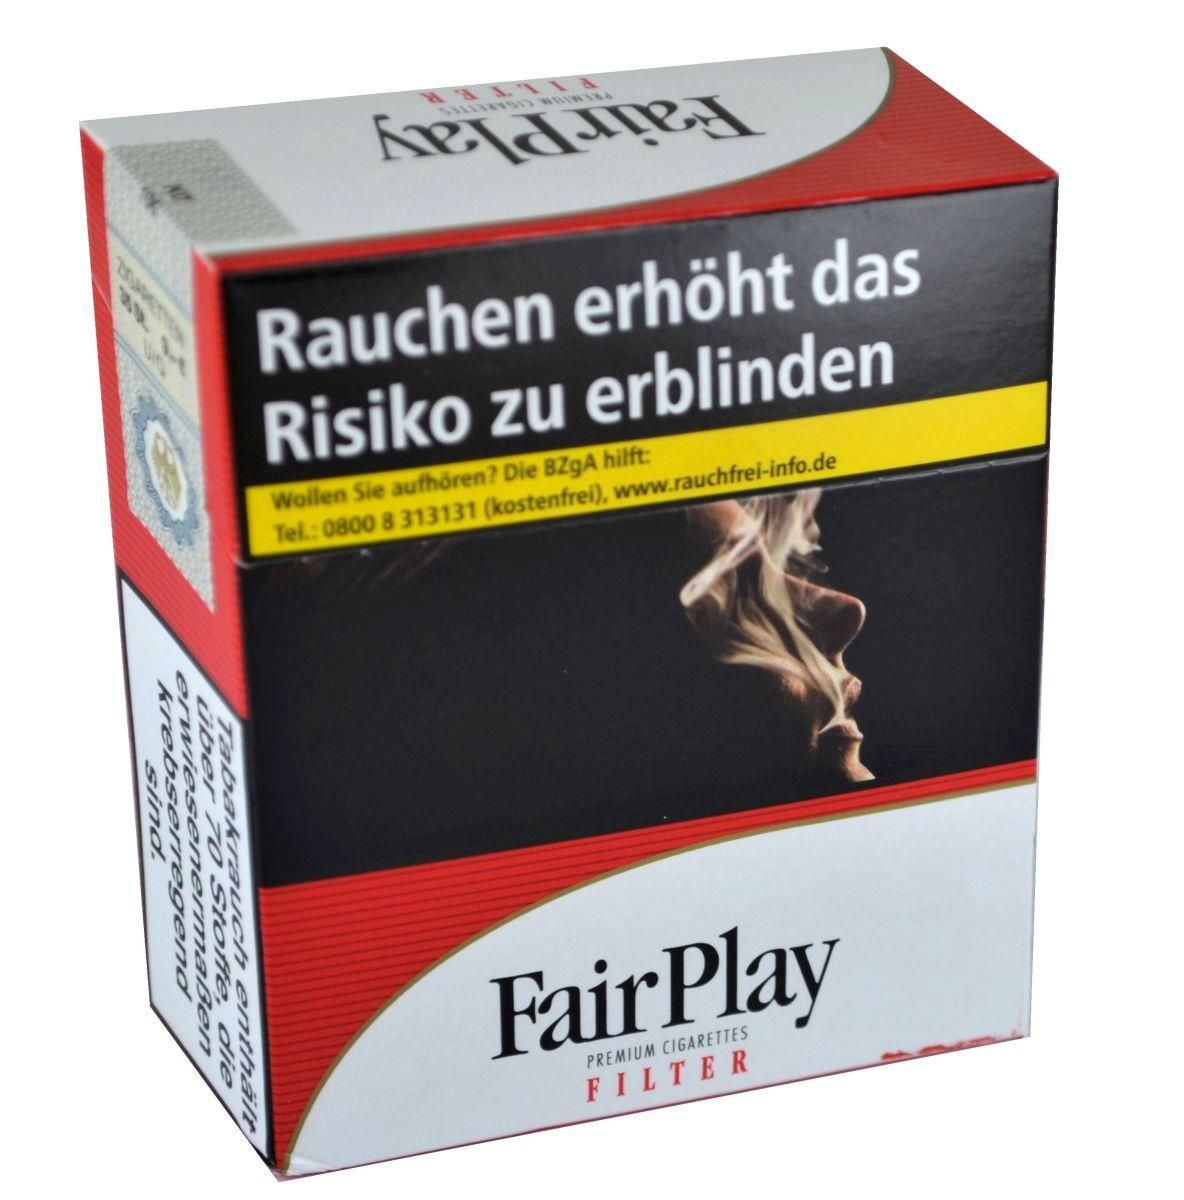 Fair Play Filter Zigaretten (34 Stück)